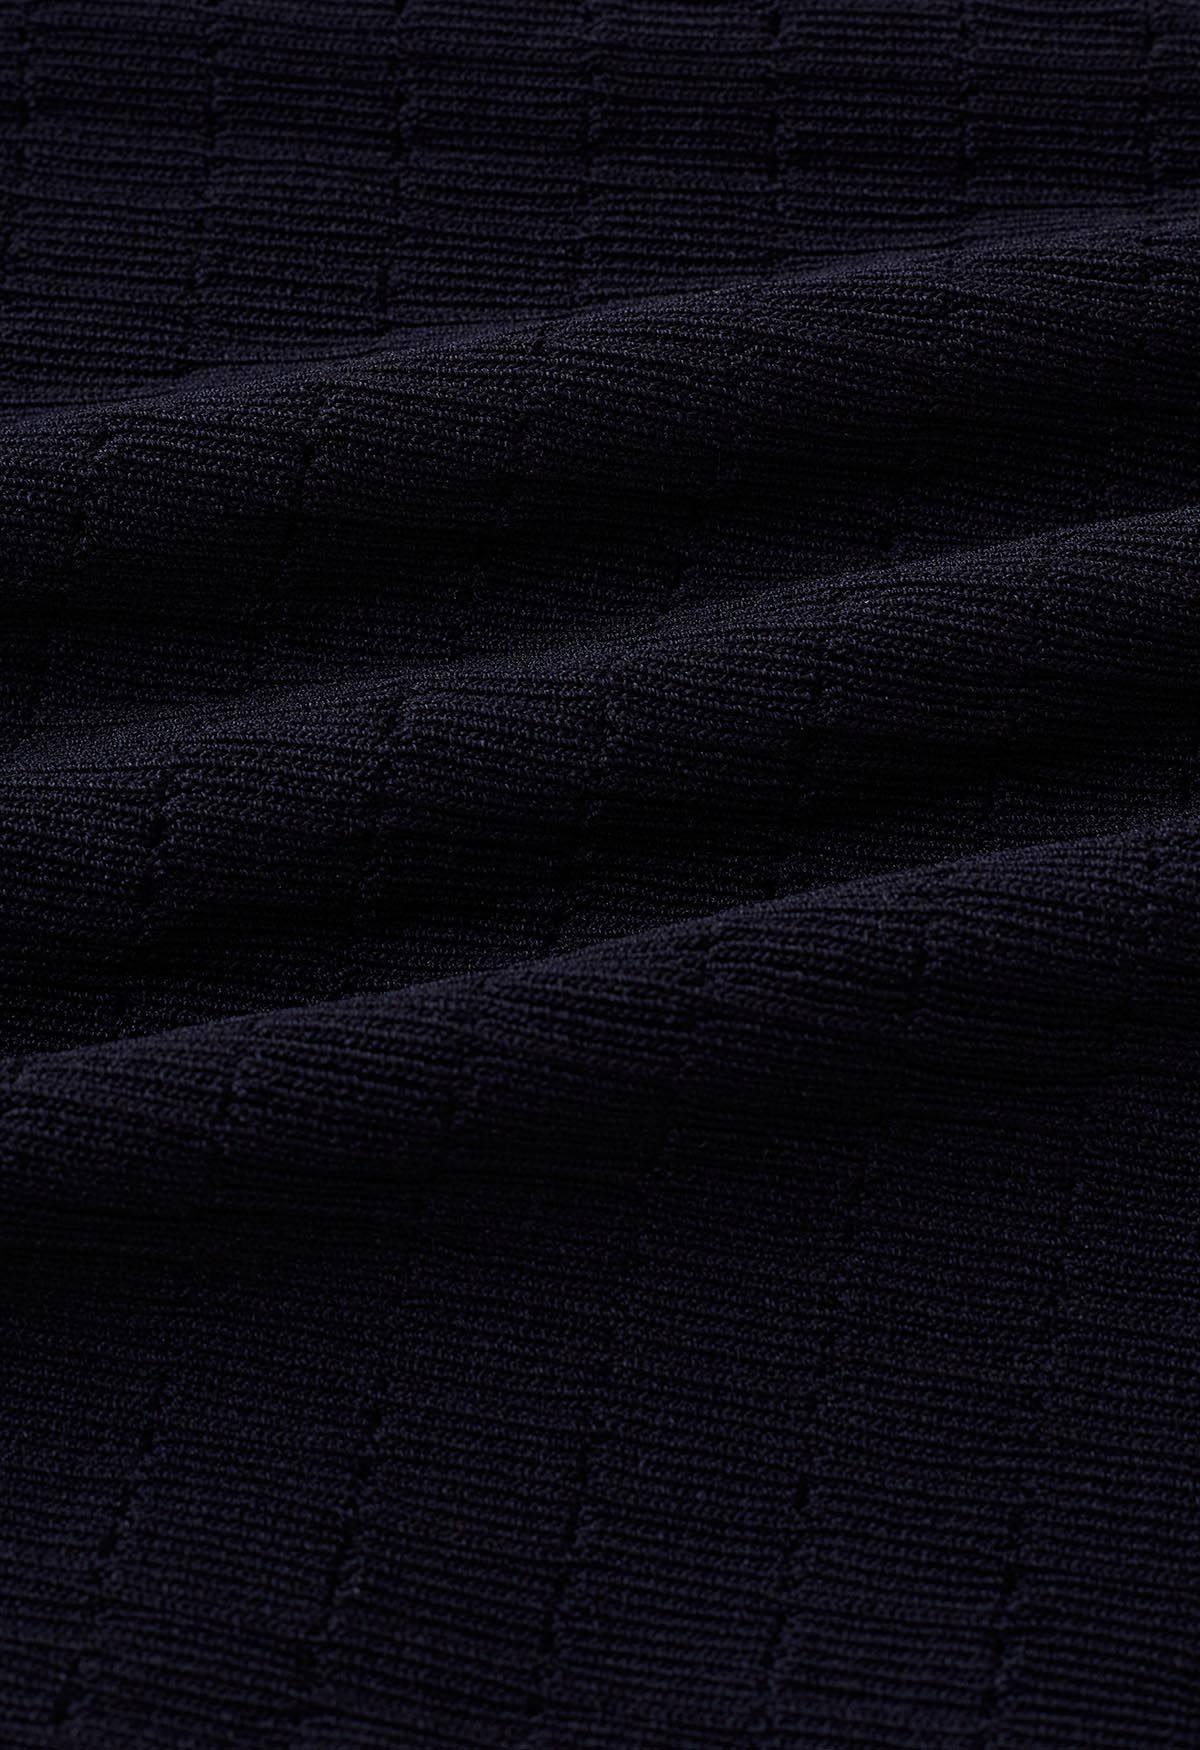 Einfarbiges, strukturiertes Cami-Kleid aus Strick in Schwarz